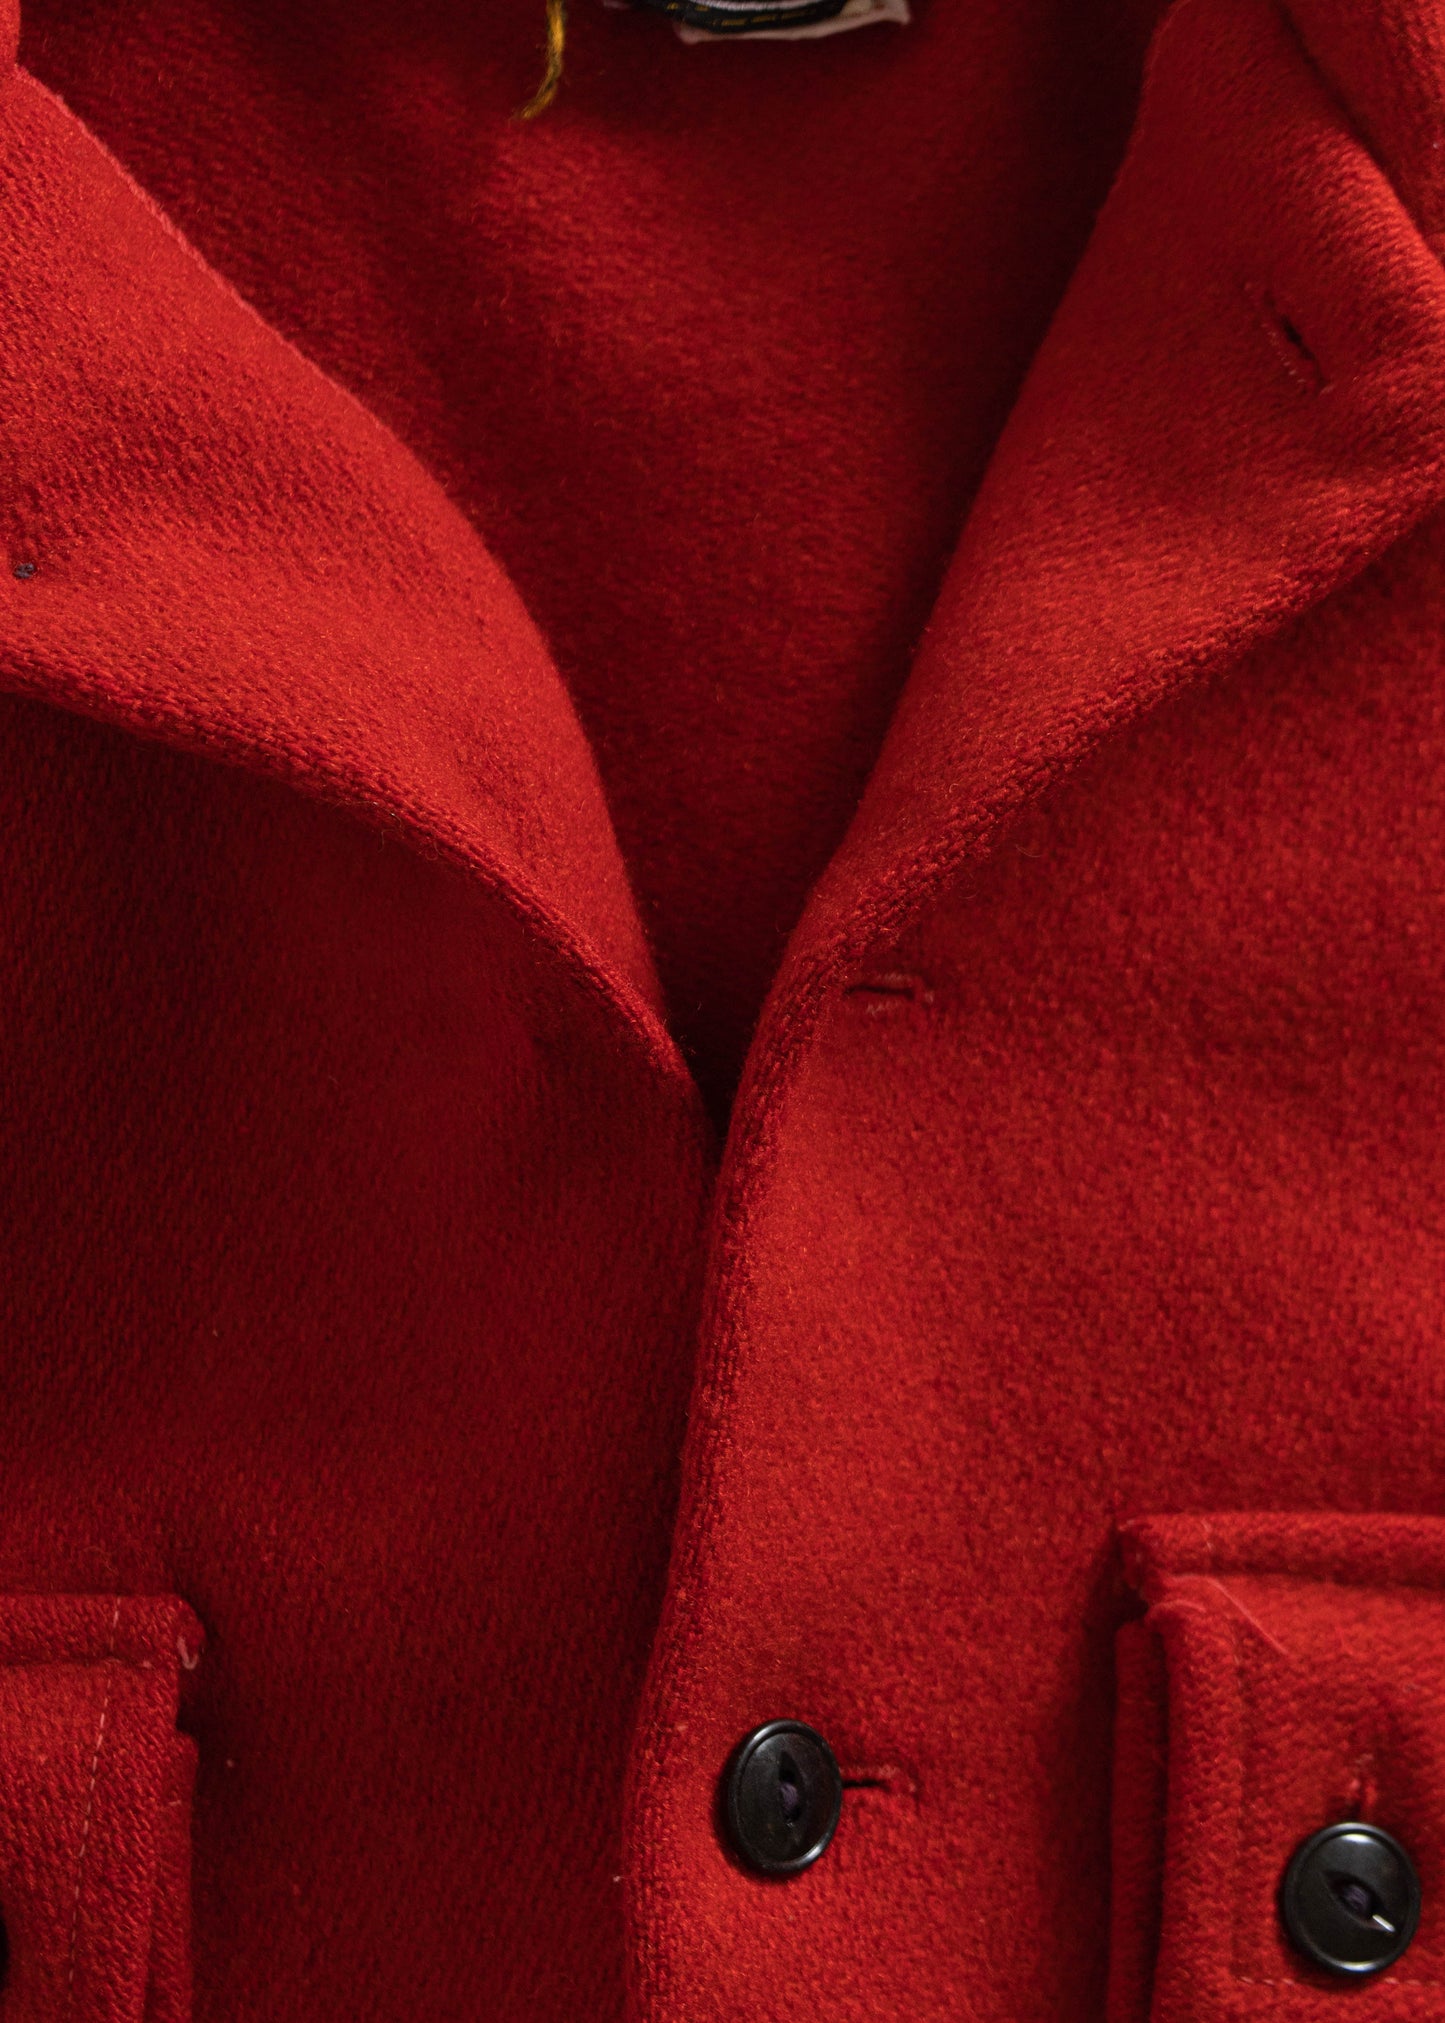 1960s Montmac by Rice Sportswear Wool Flannel Jacket Size M/L